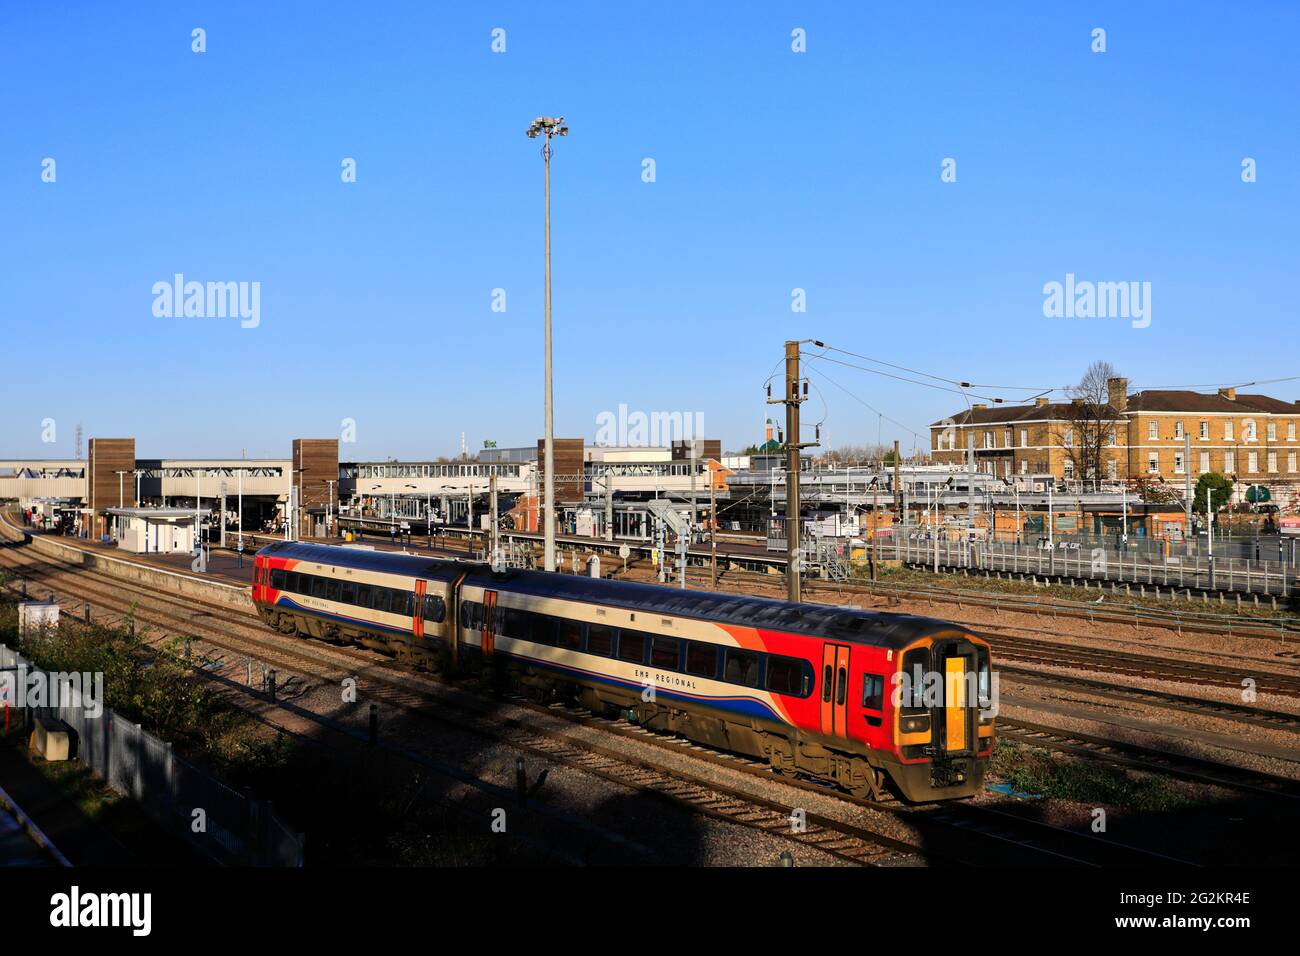 EMR 158780 à la gare de Peterborough, East Coast main Line Railway; Cambridgeshire, Angleterre, Royaume-Uni Banque D'Images